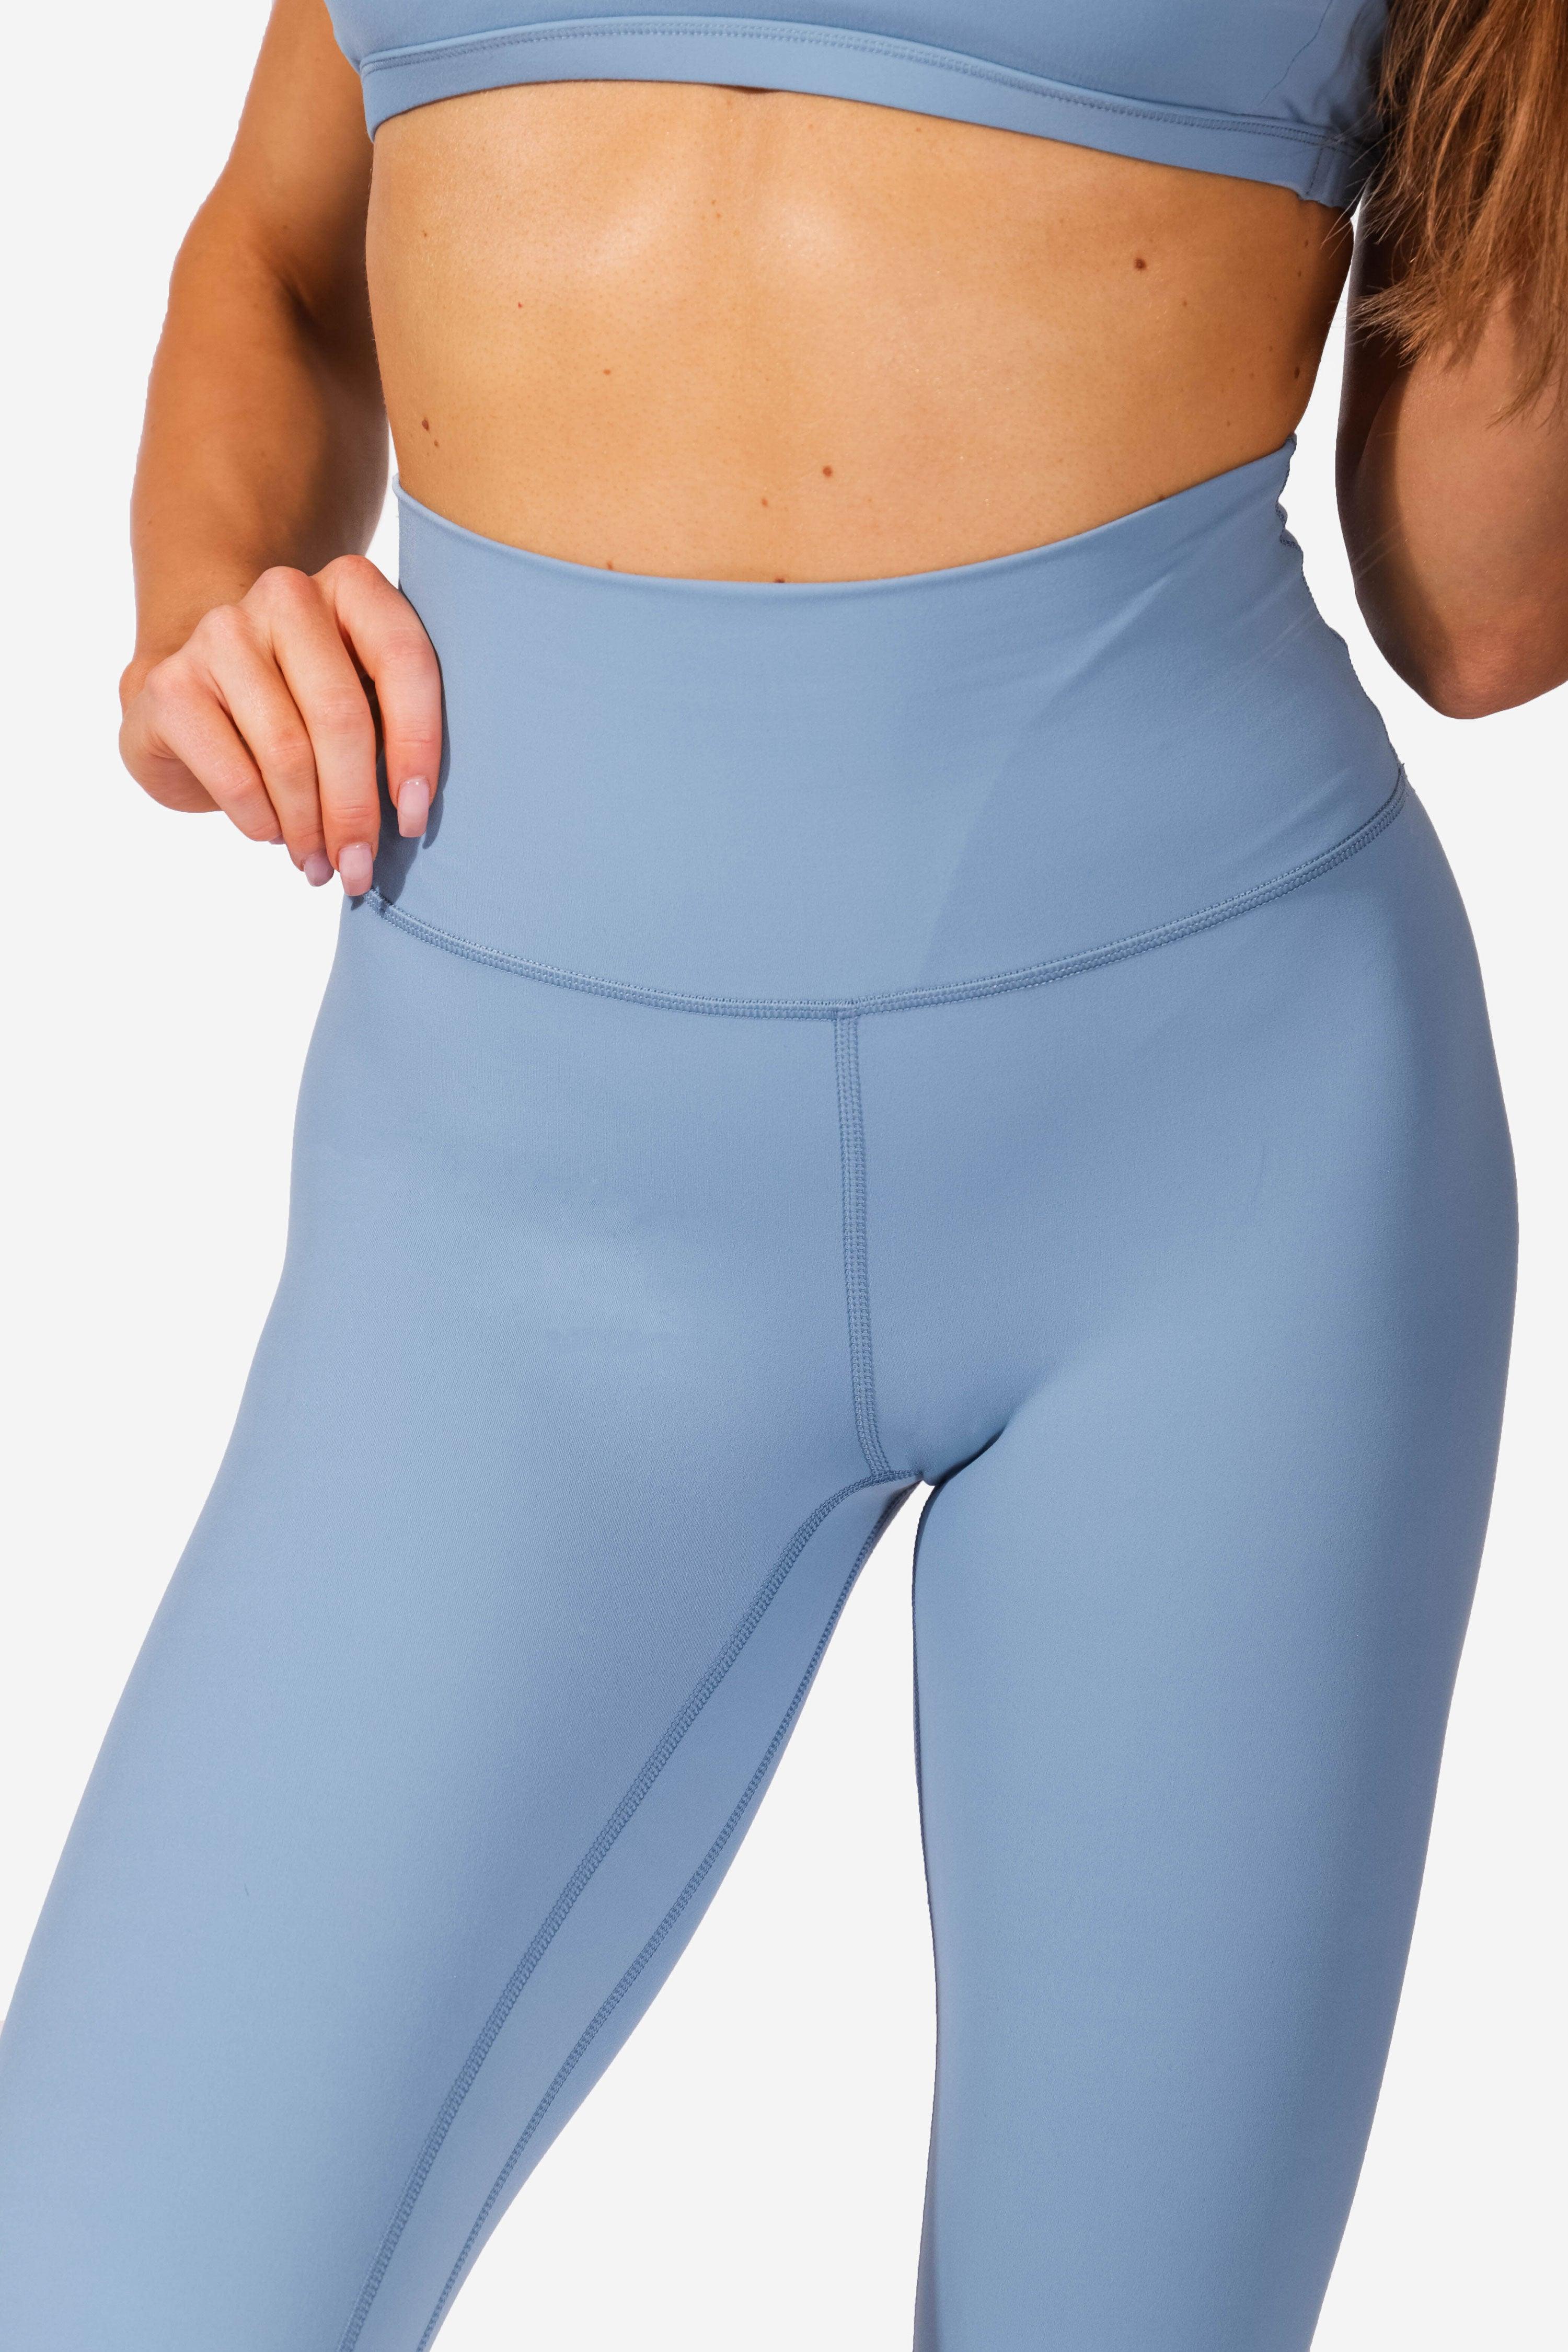 Light Blue Pants, Shop 19 items